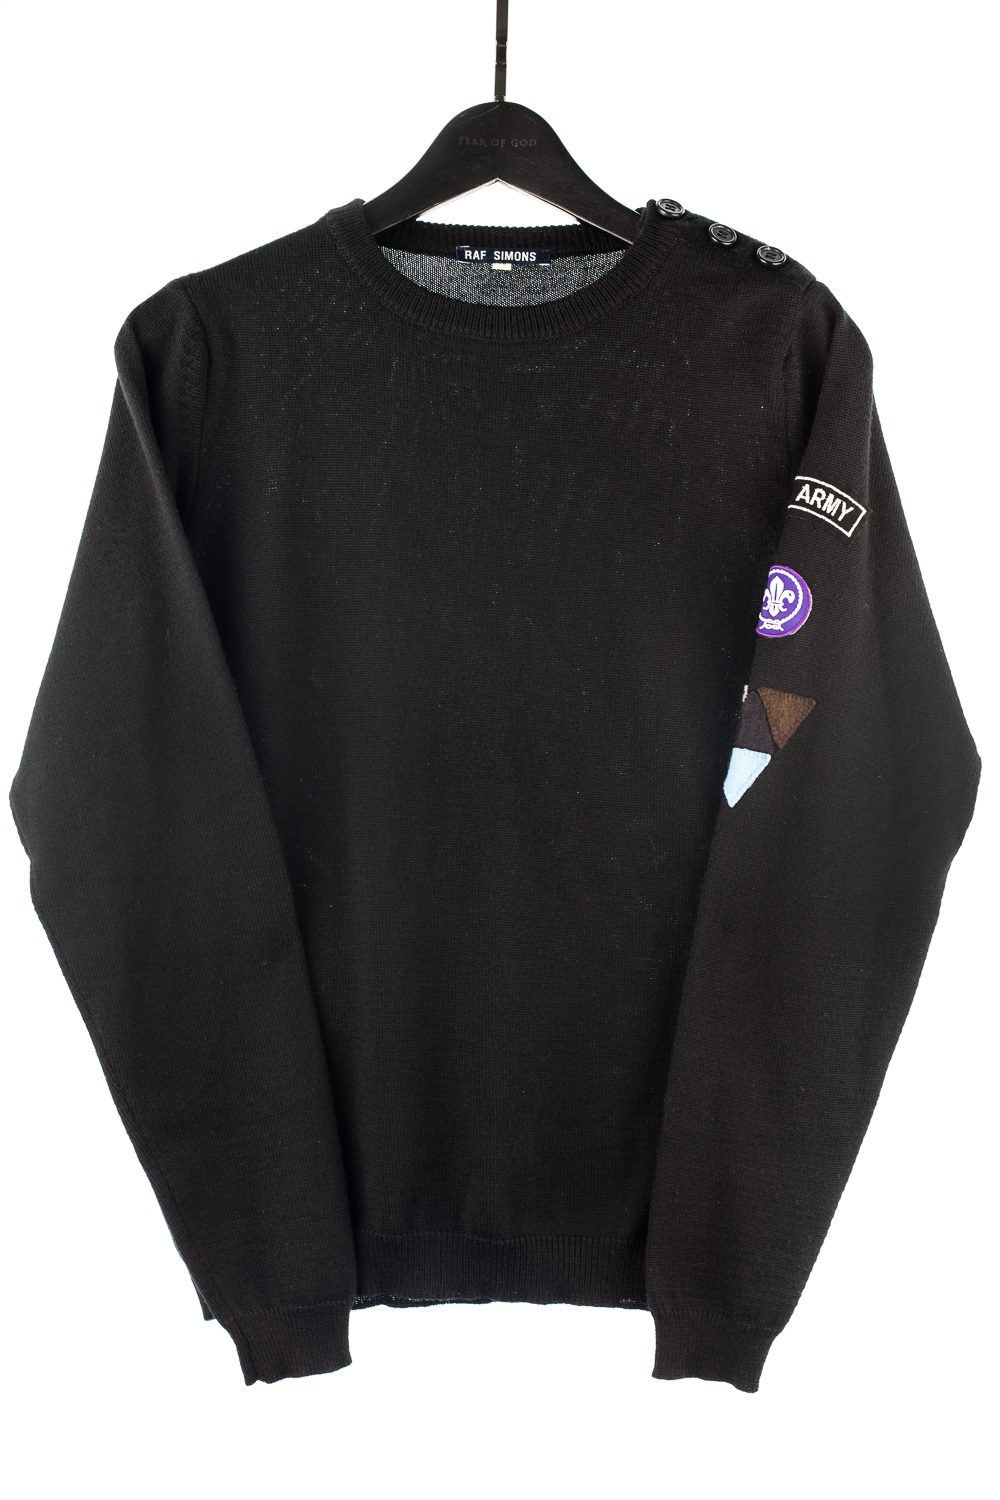 FW96 “Pop Army” Sweater